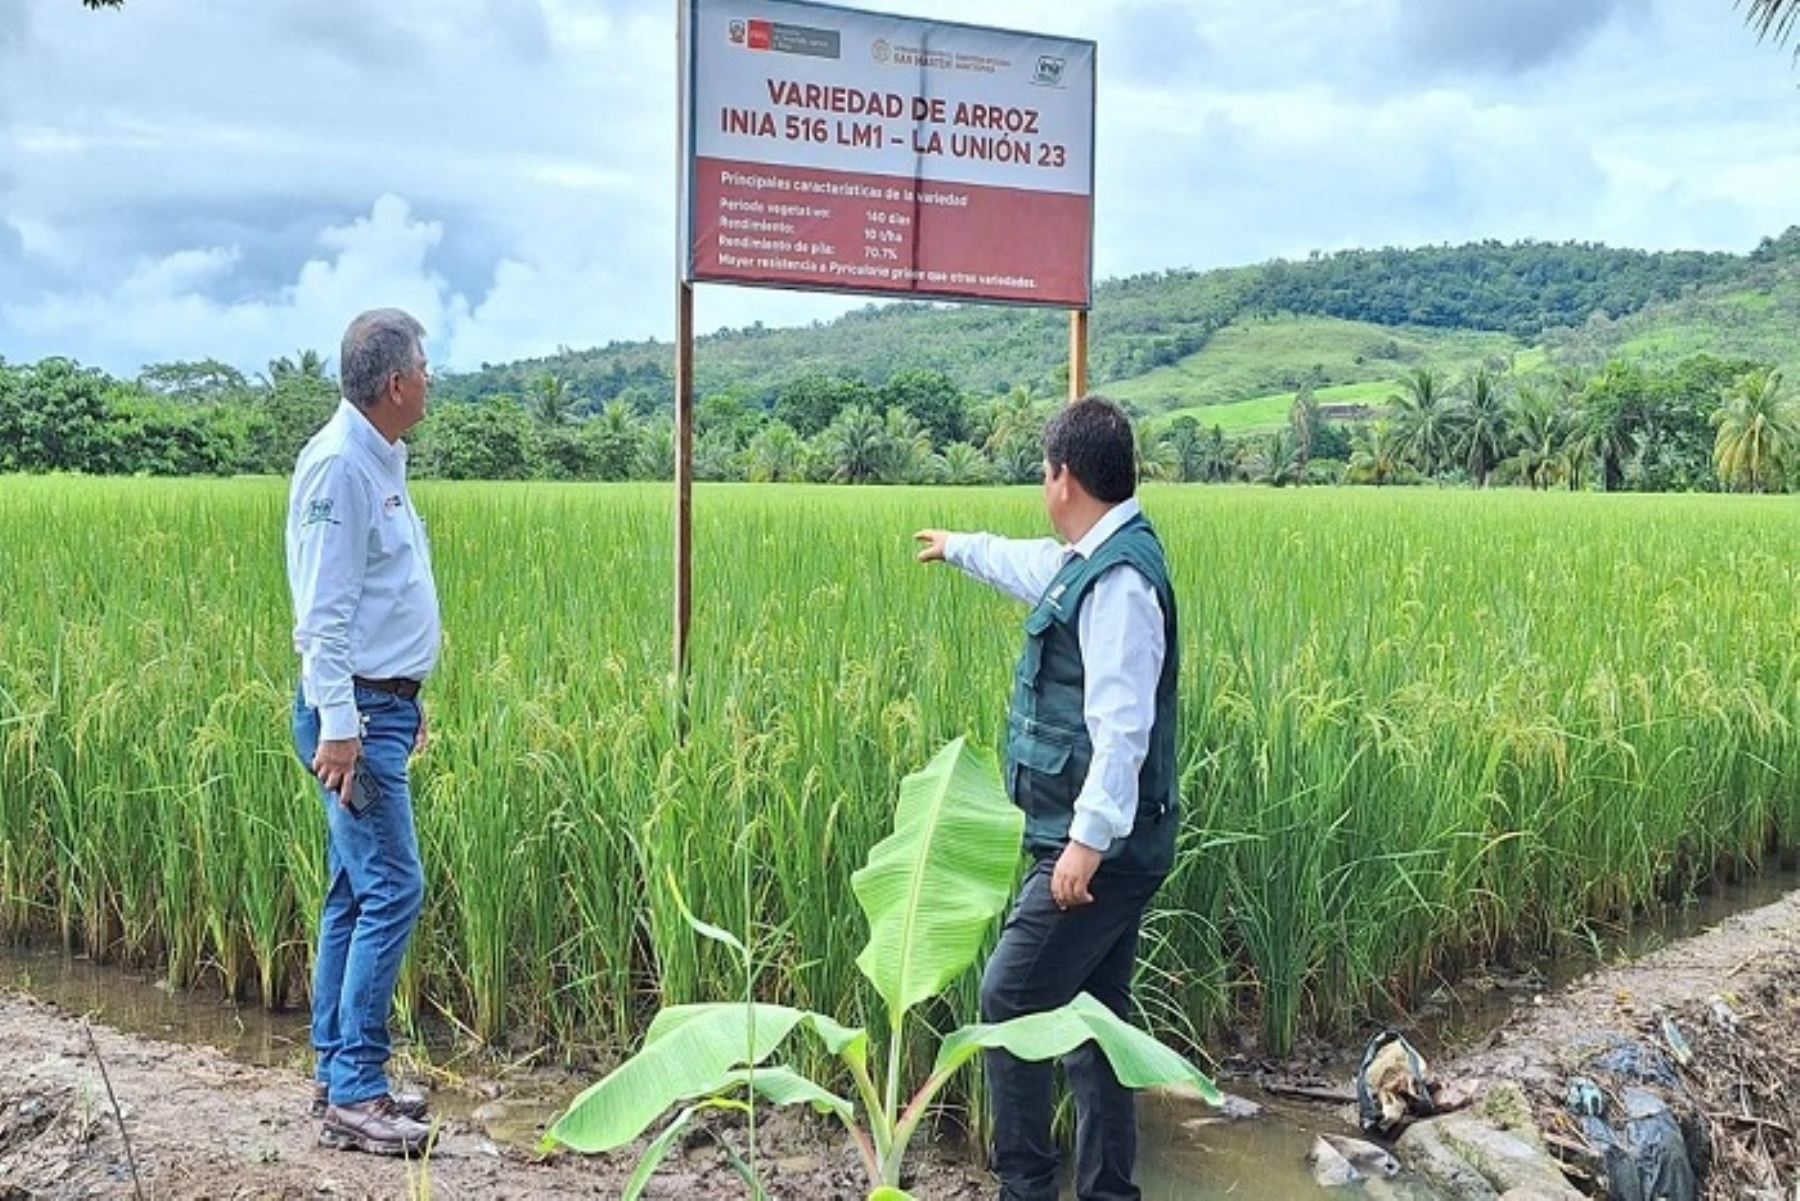 Esta variedad de arroz INIA 516 LM1 La Unión 23, es de alto valor genético y tolerante a las plagas y enfermedades y permitirá incrementar el rendimiento en 10 toneladas por hectárea de las áreas de cultivo de alrededor de 3,500 productores de la región.